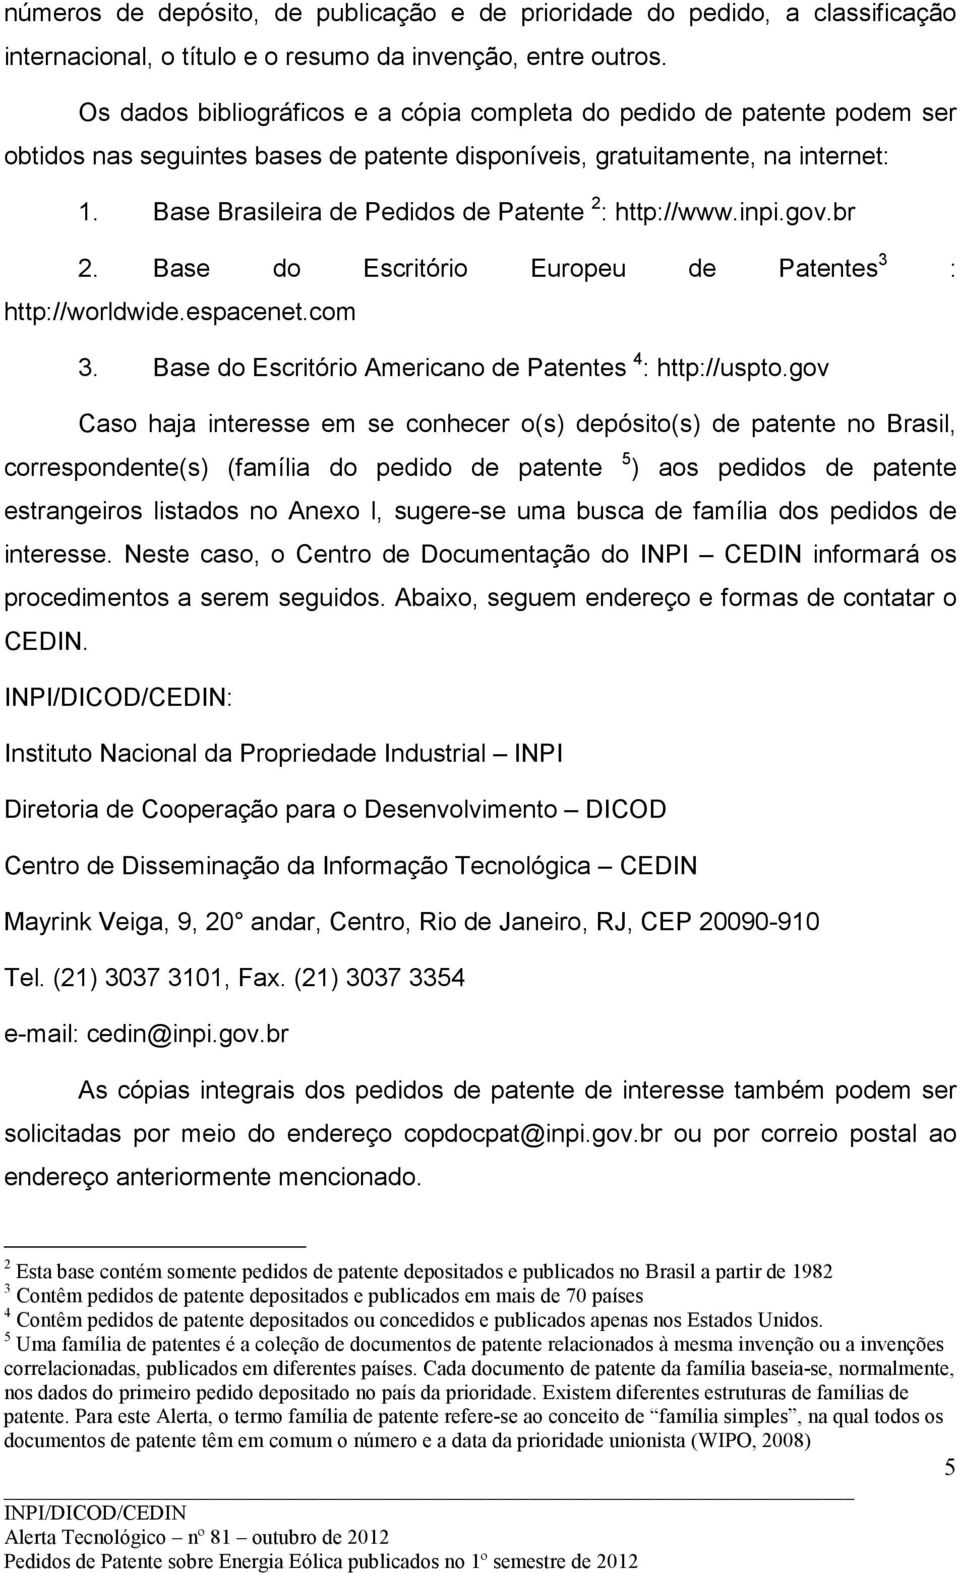 Base Brasileira de Pedidos de Patente 2 : http://www.inpi.gov.br 2. Base do Escritório Europeu de 3 : http://worldwide.espacenet.com 3. Base do Escritório Americano de 4 : http://uspto.